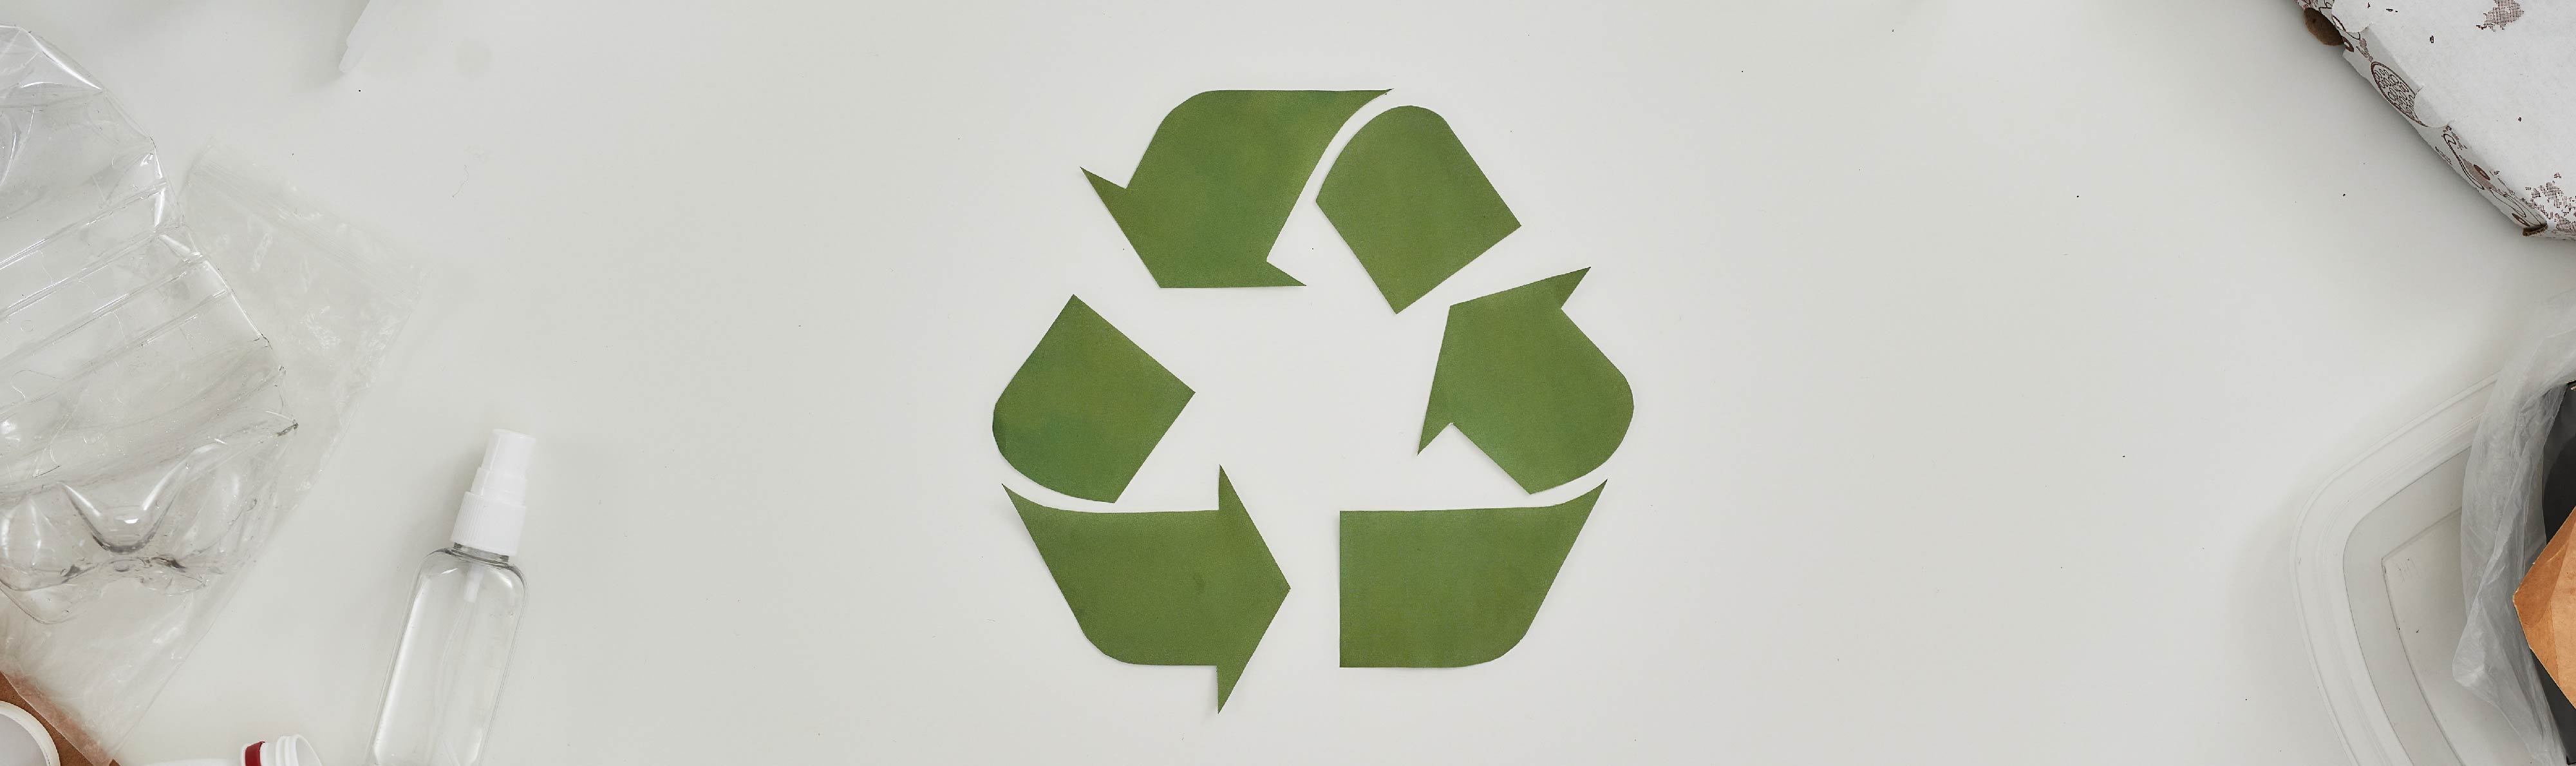 Apa Itu Barang Recycling? Ketahui Arti dan Contohnya